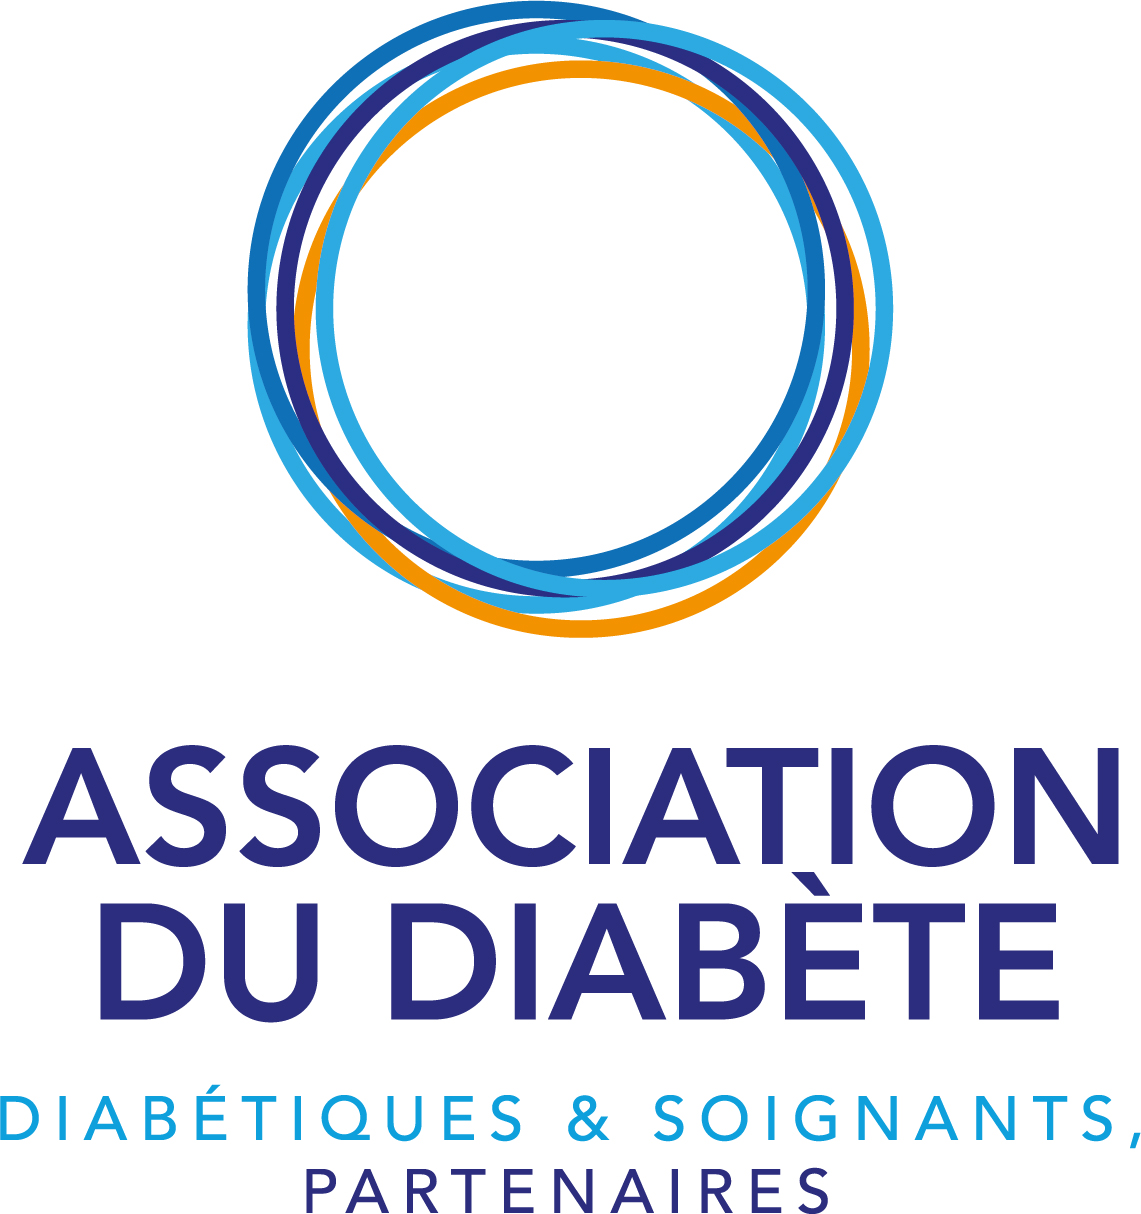 Association du diabete